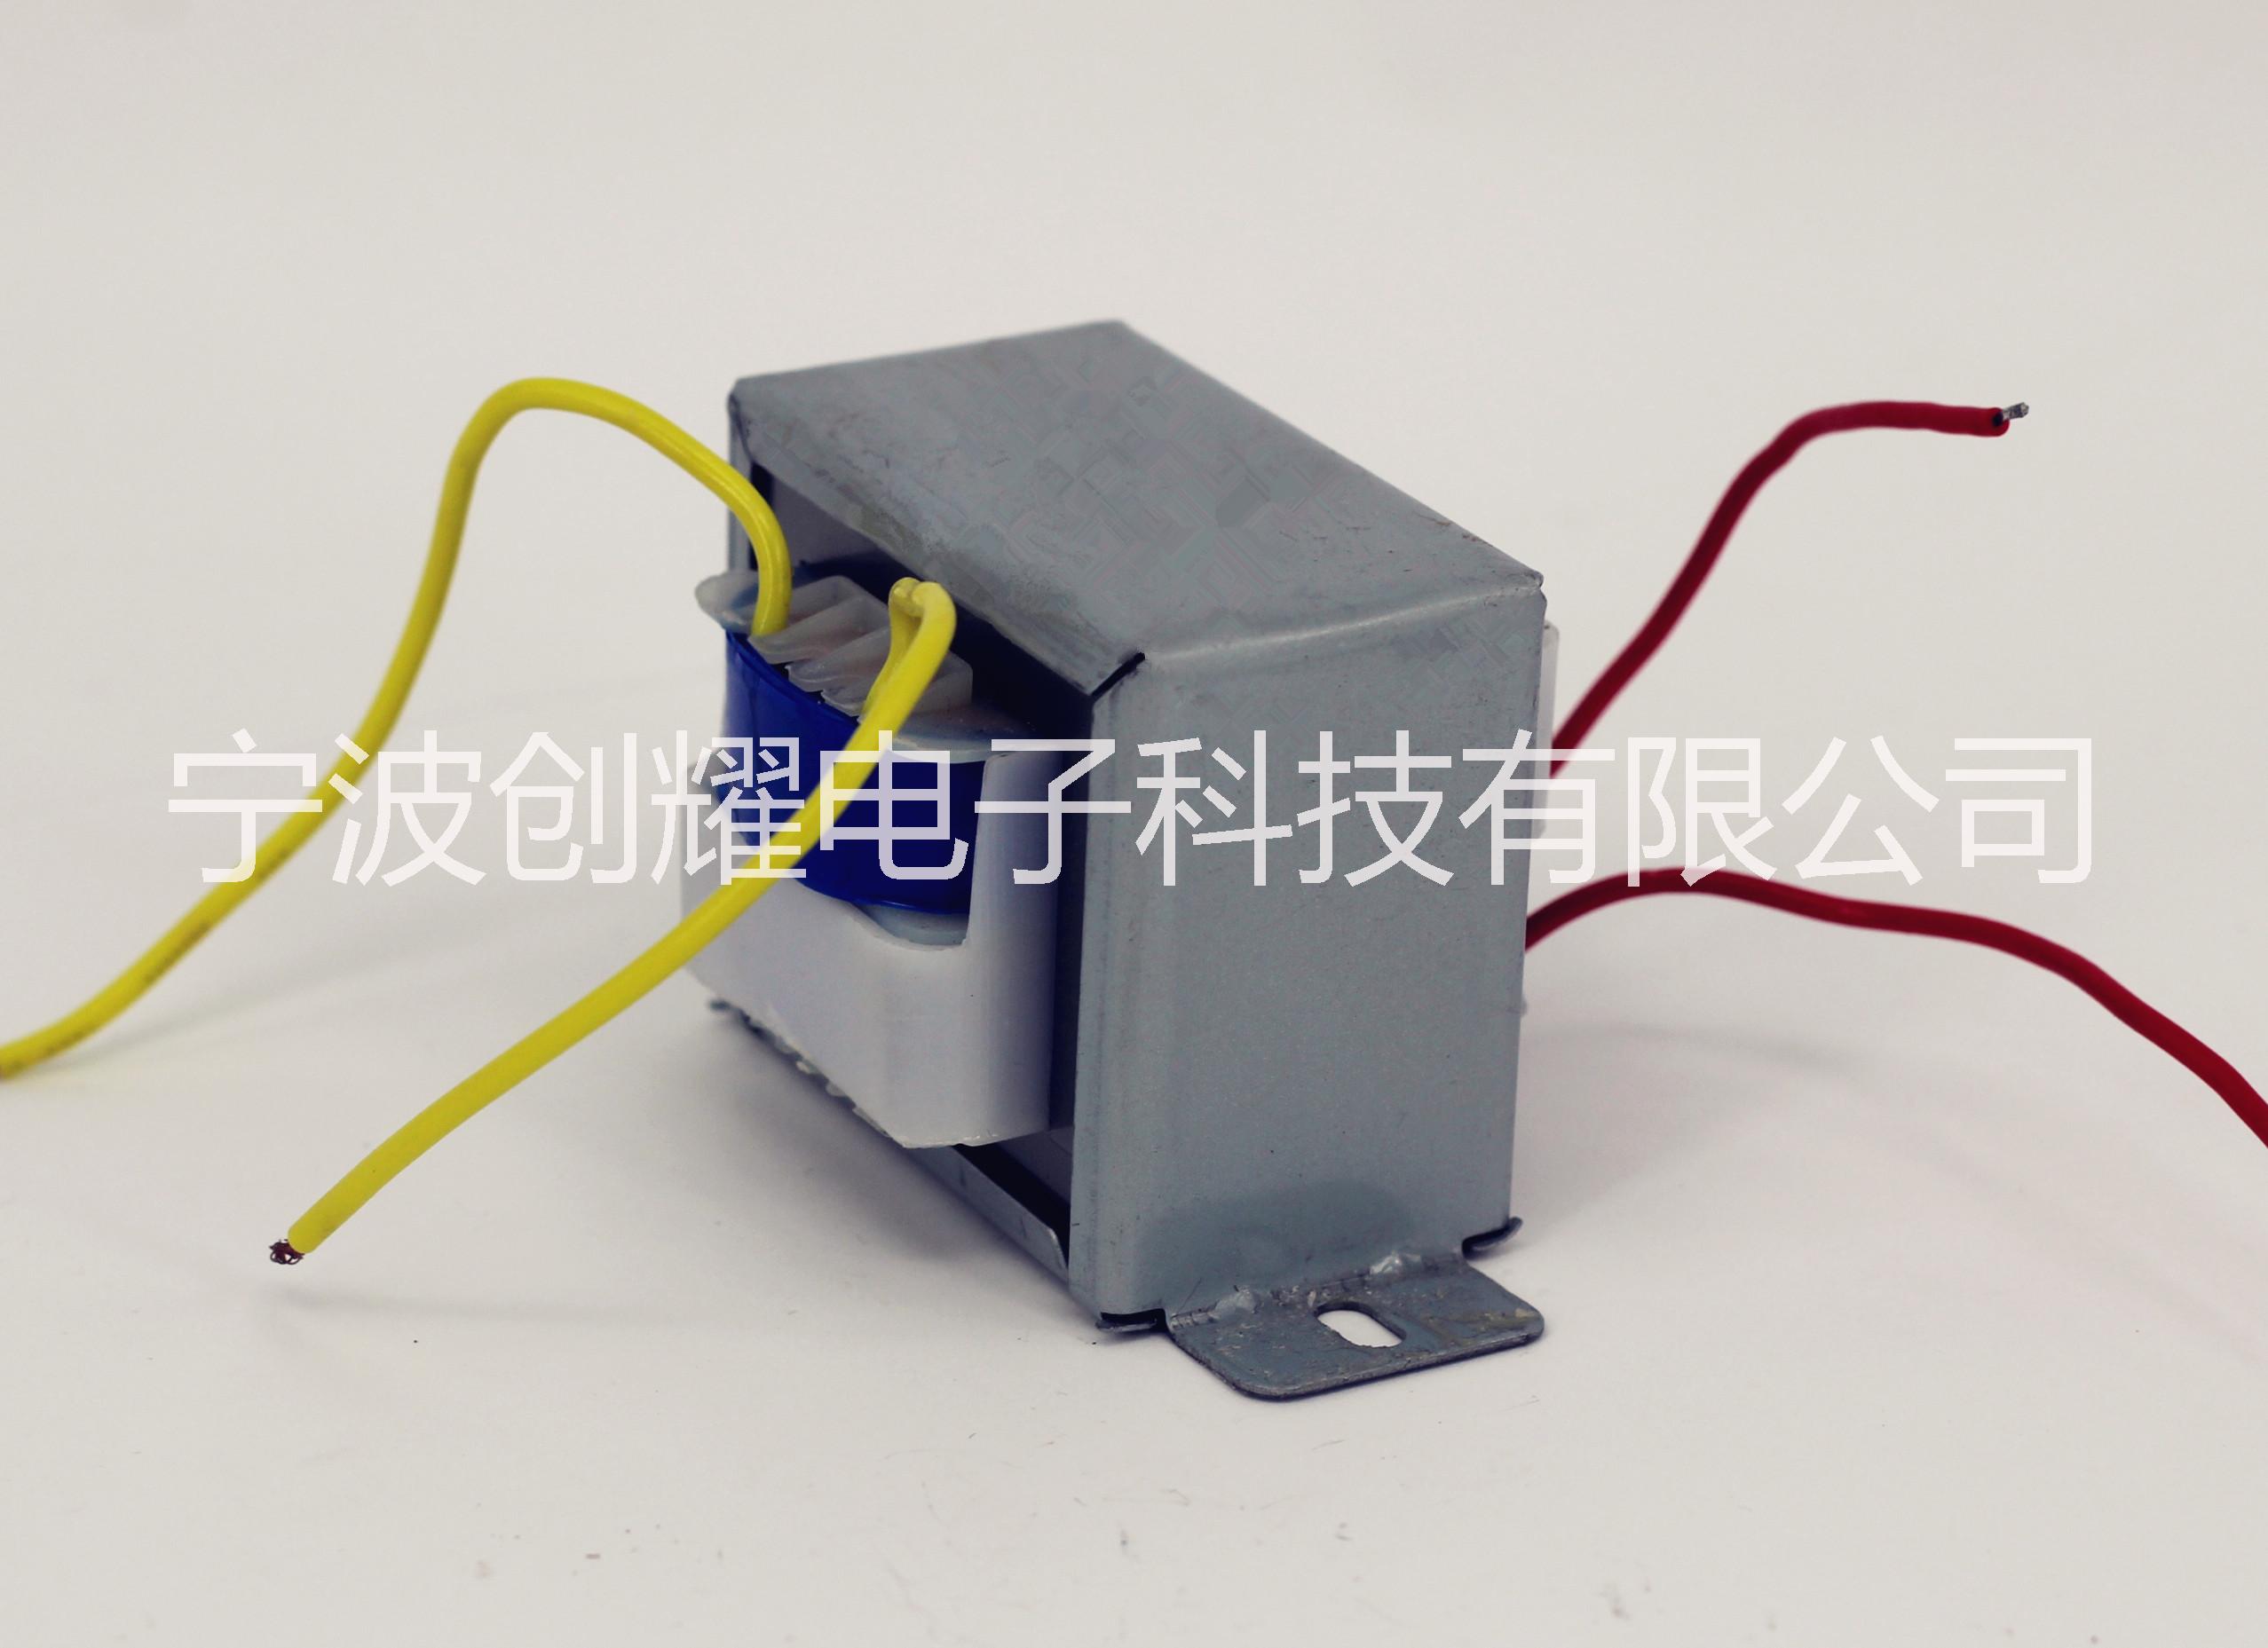 浙江E型变压器厂家方形变压器定做厂家方形低频变压器定做厂家供应方形低频变压器定制图片